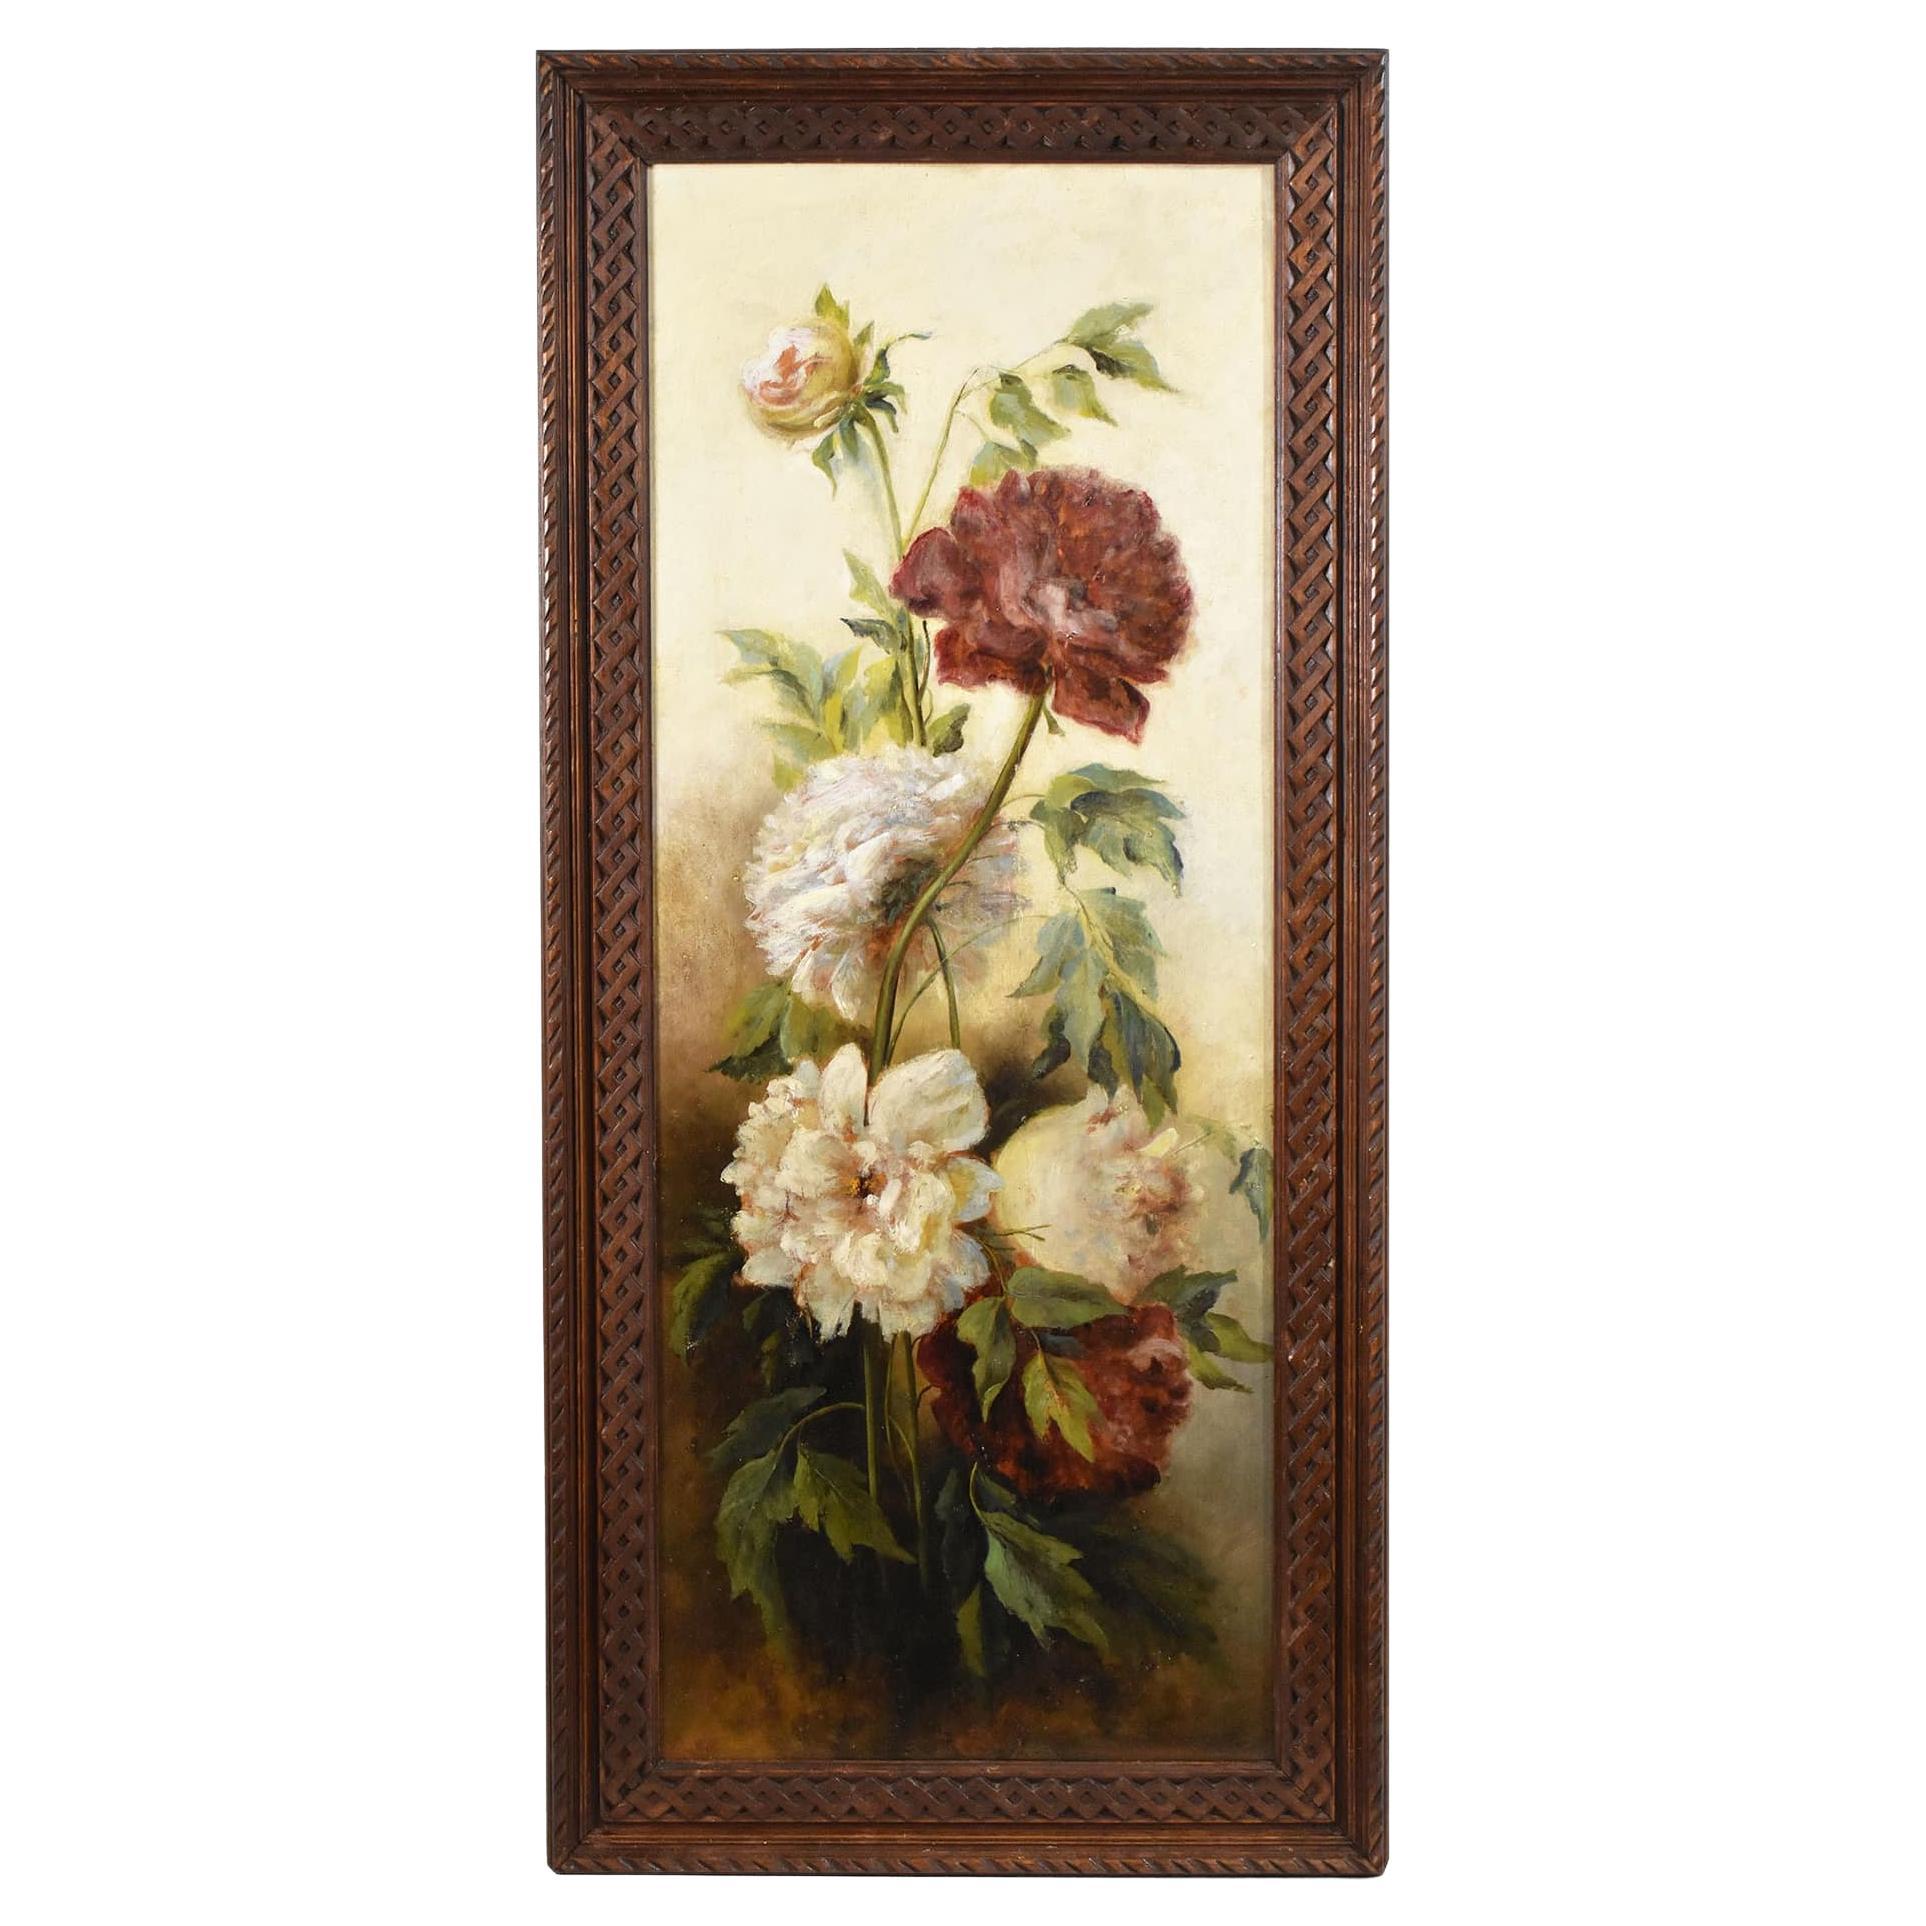 Stillleben-Gemälde, Blumenvasen-Gemälde, Blumenvasen mit Pfingstrosen, Öl auf Holz